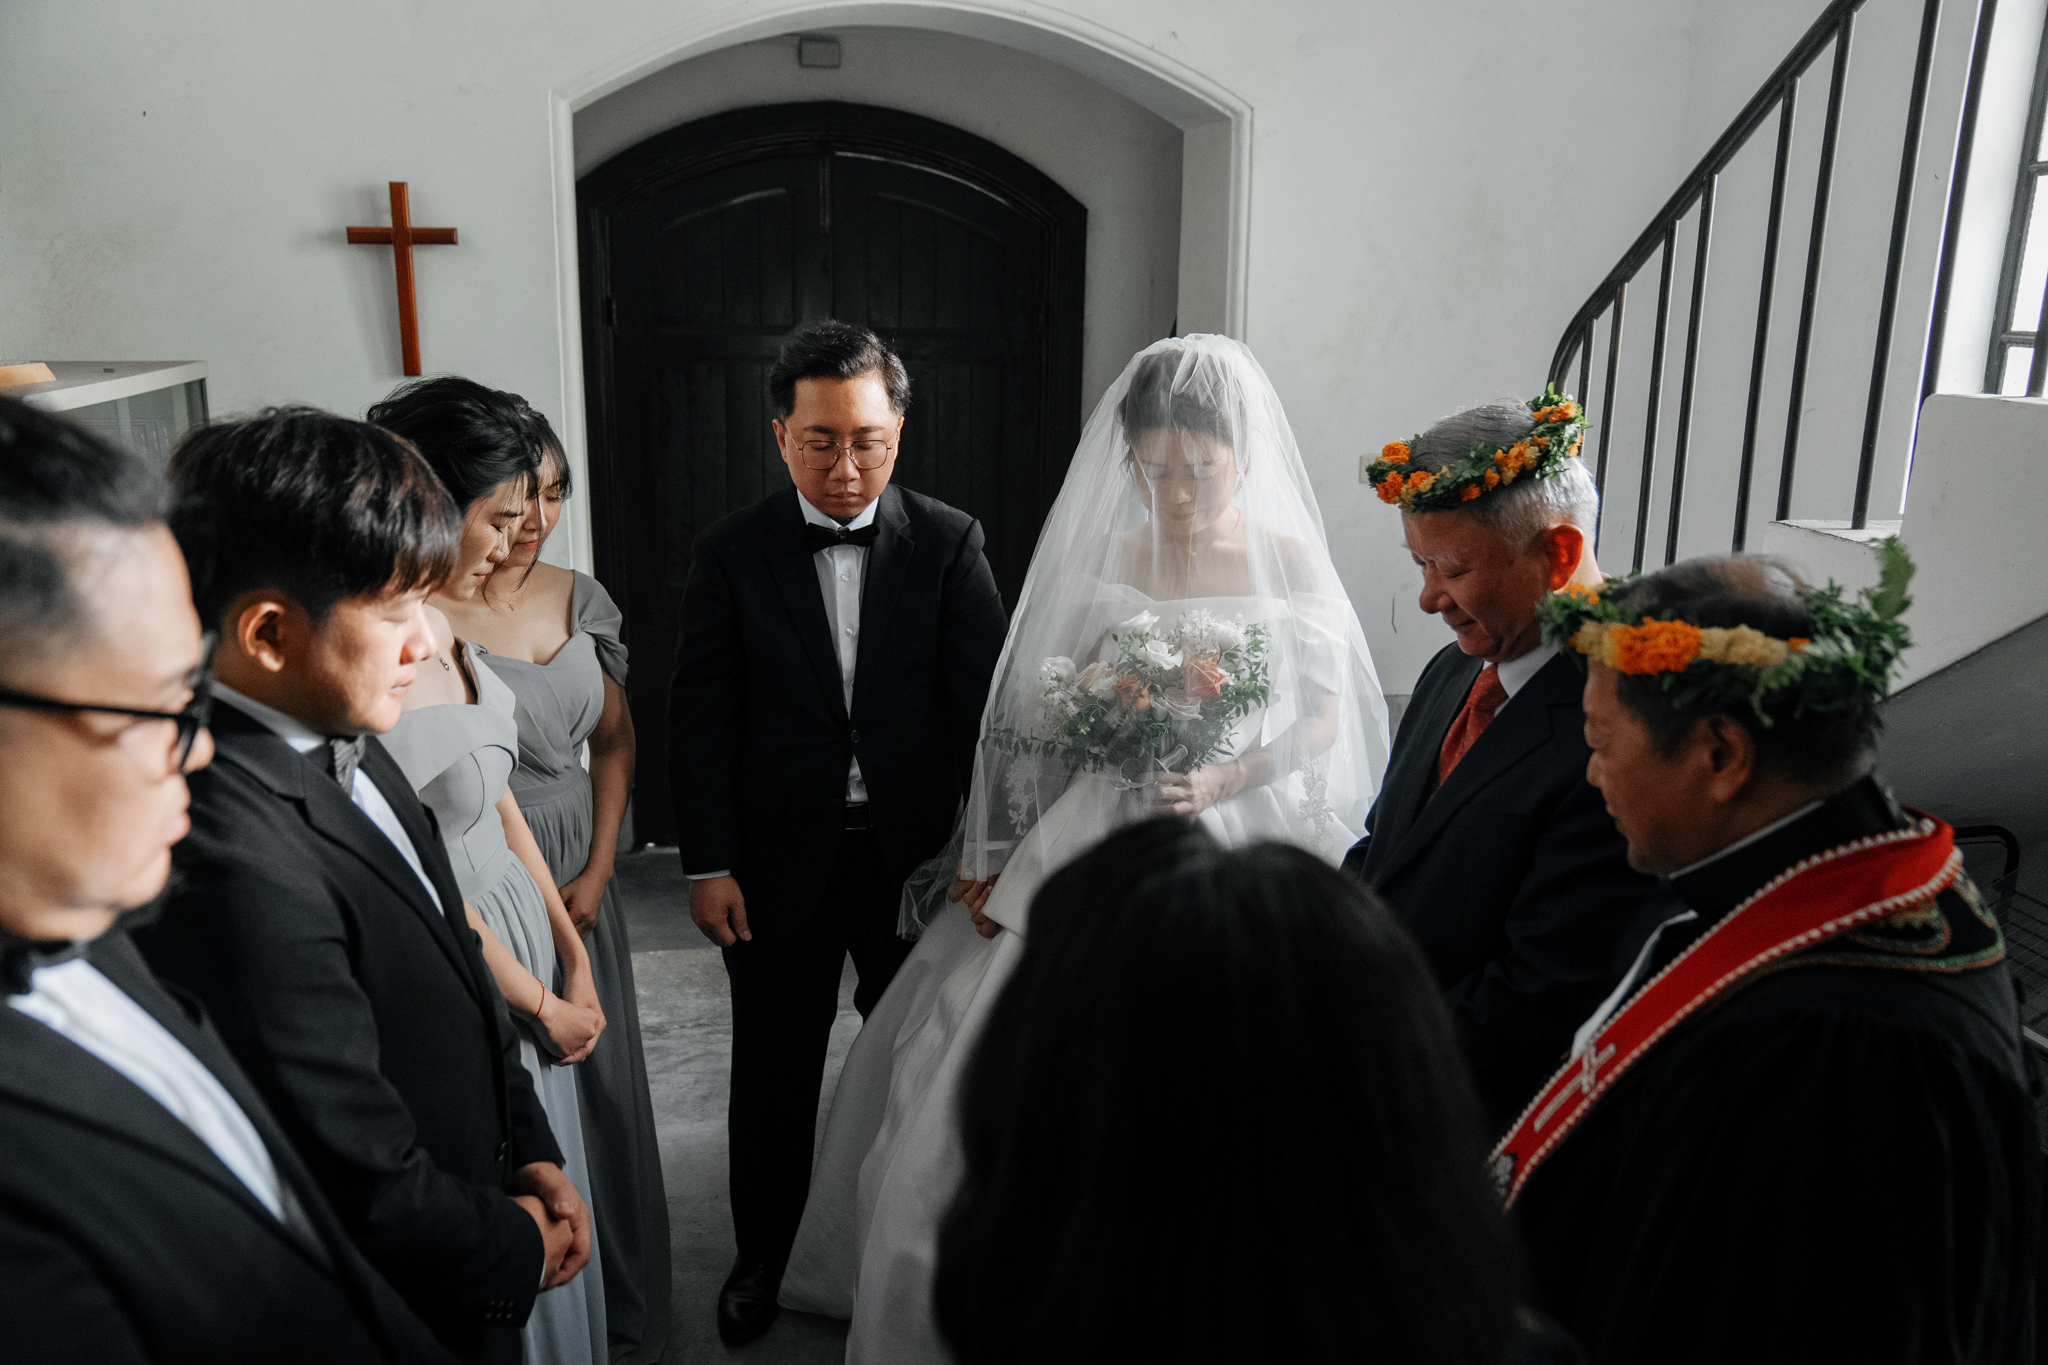 晶華酒店, 婚禮紀錄, Wedding Day, Donfer, EW, 東法, 台北婚攝, 濟南長老教會